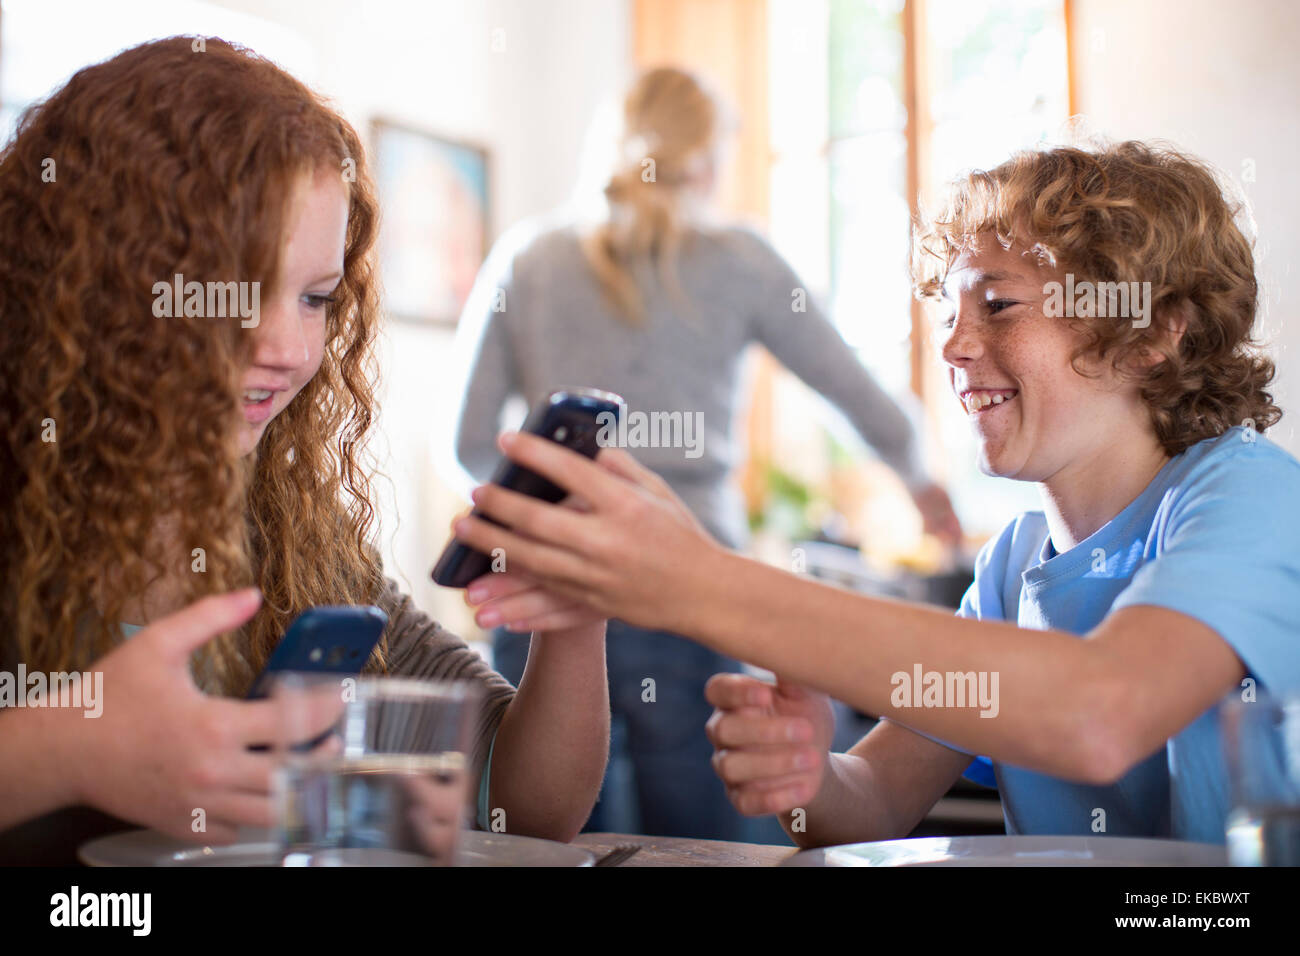 Frères et sœurs en utilisant smartphone à table à manger Banque D'Images